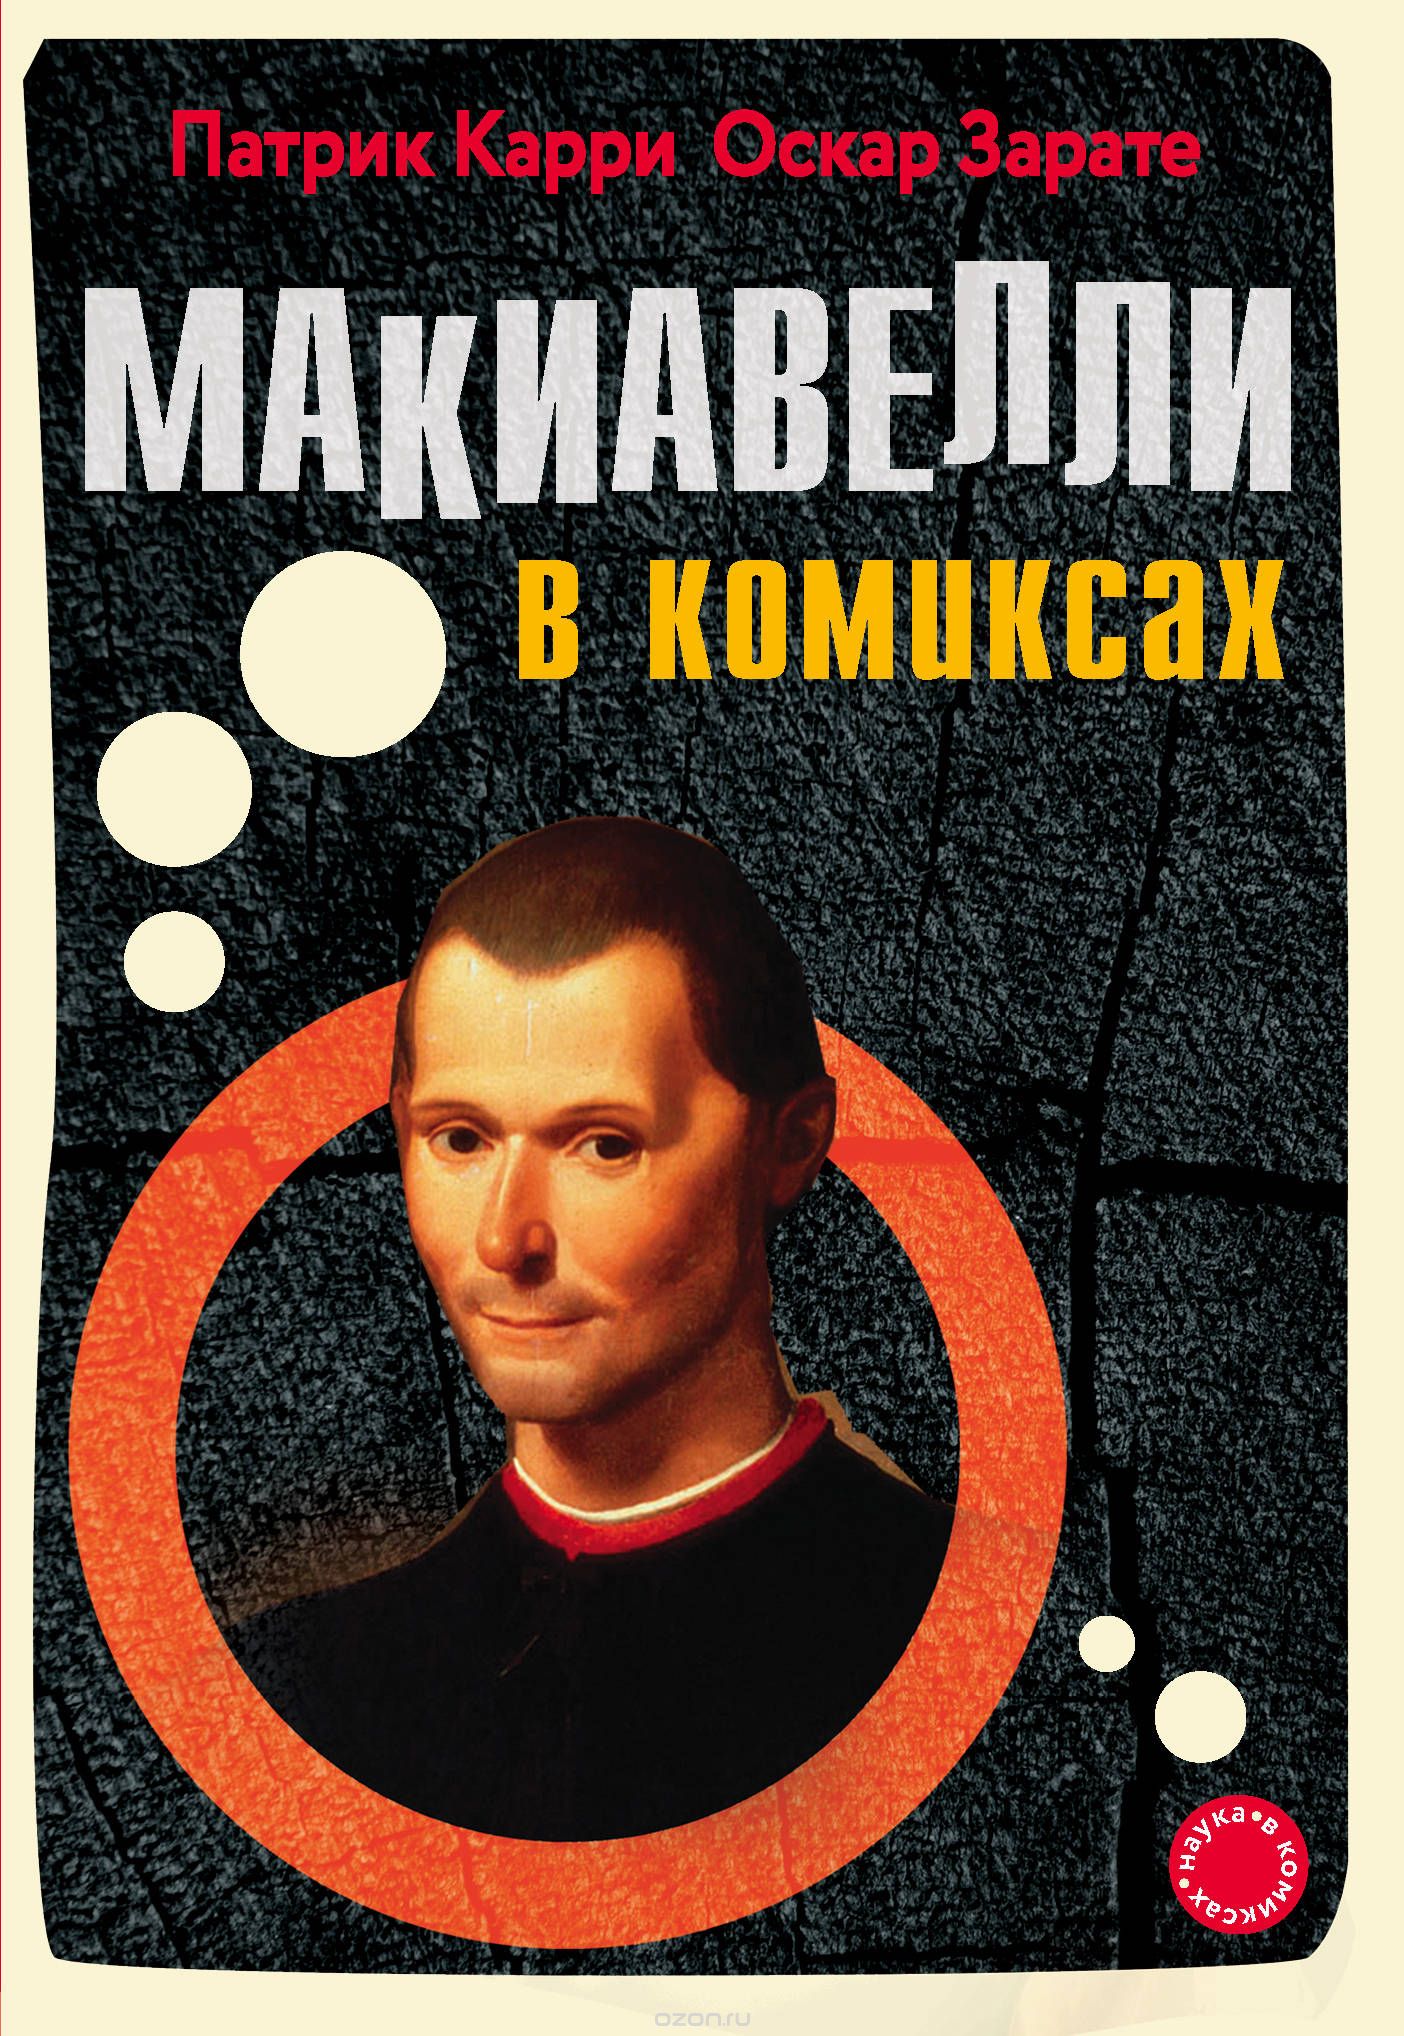 Комикс на русском языке «Макиавелли в комиксах»